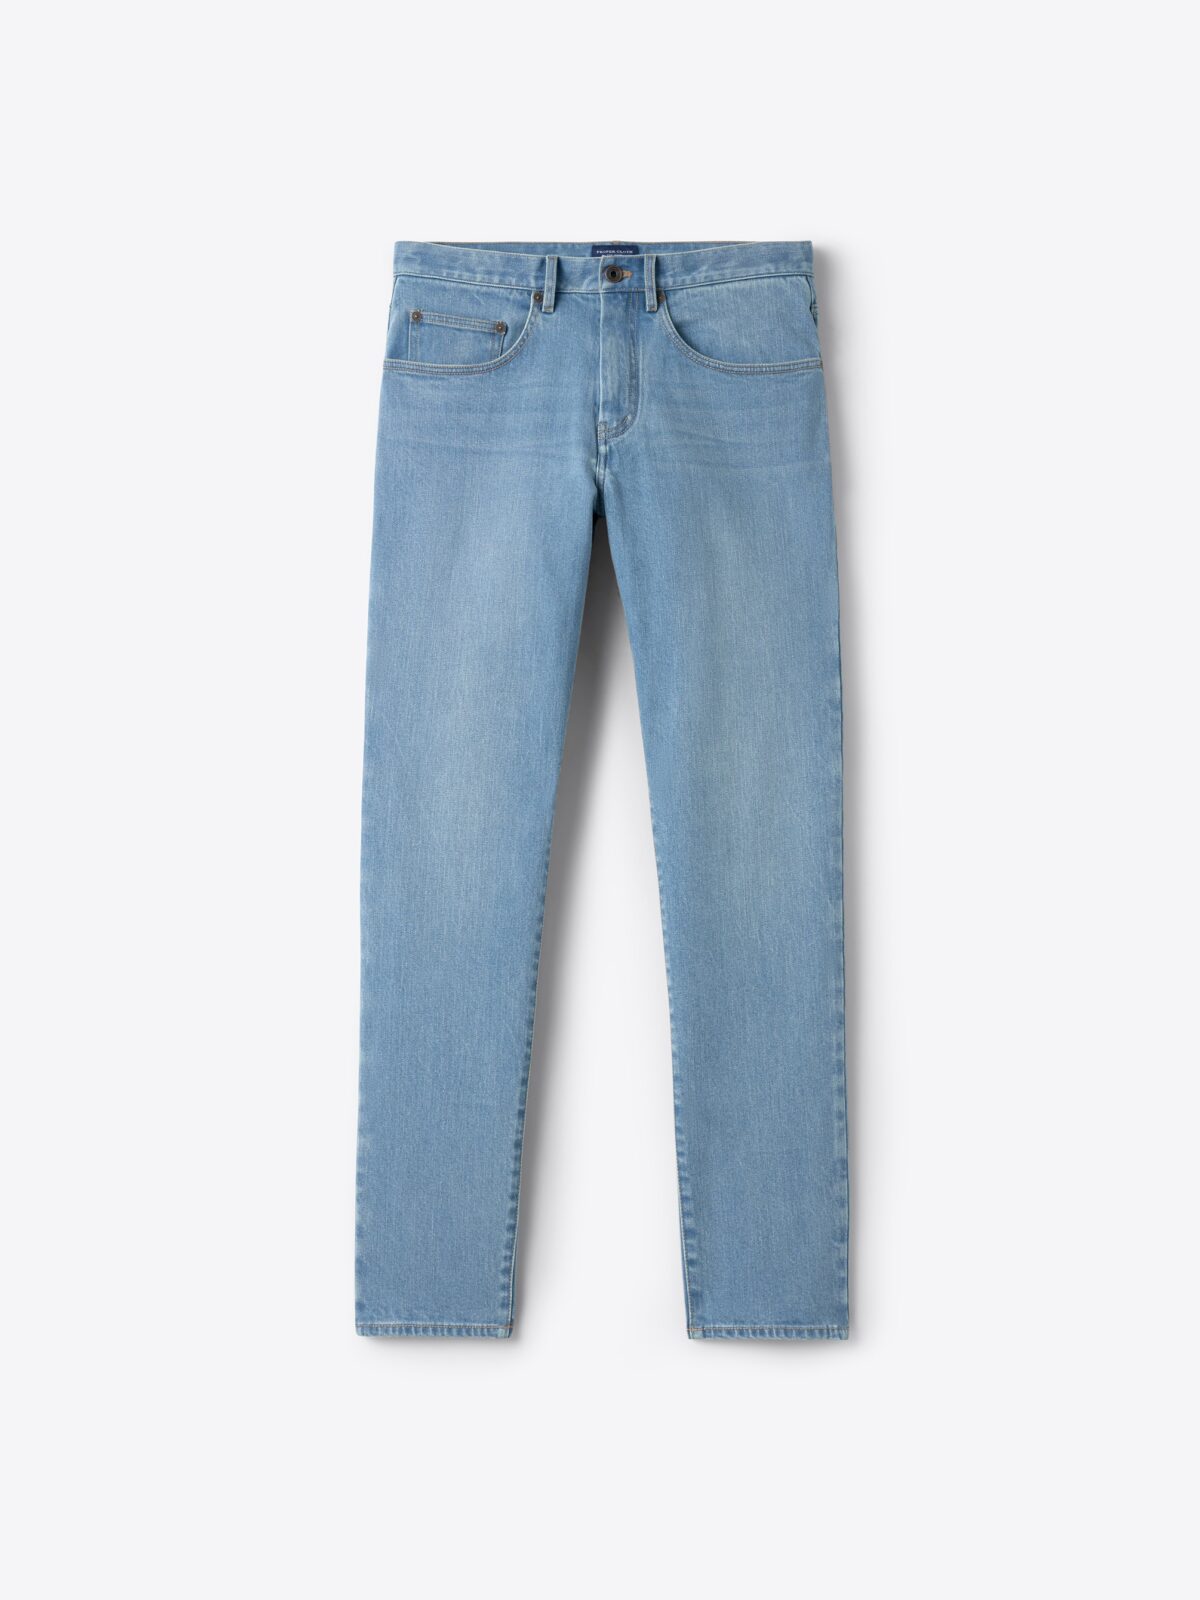 Men’s Denim Jeans · 100% Cotton · Dark Indigo